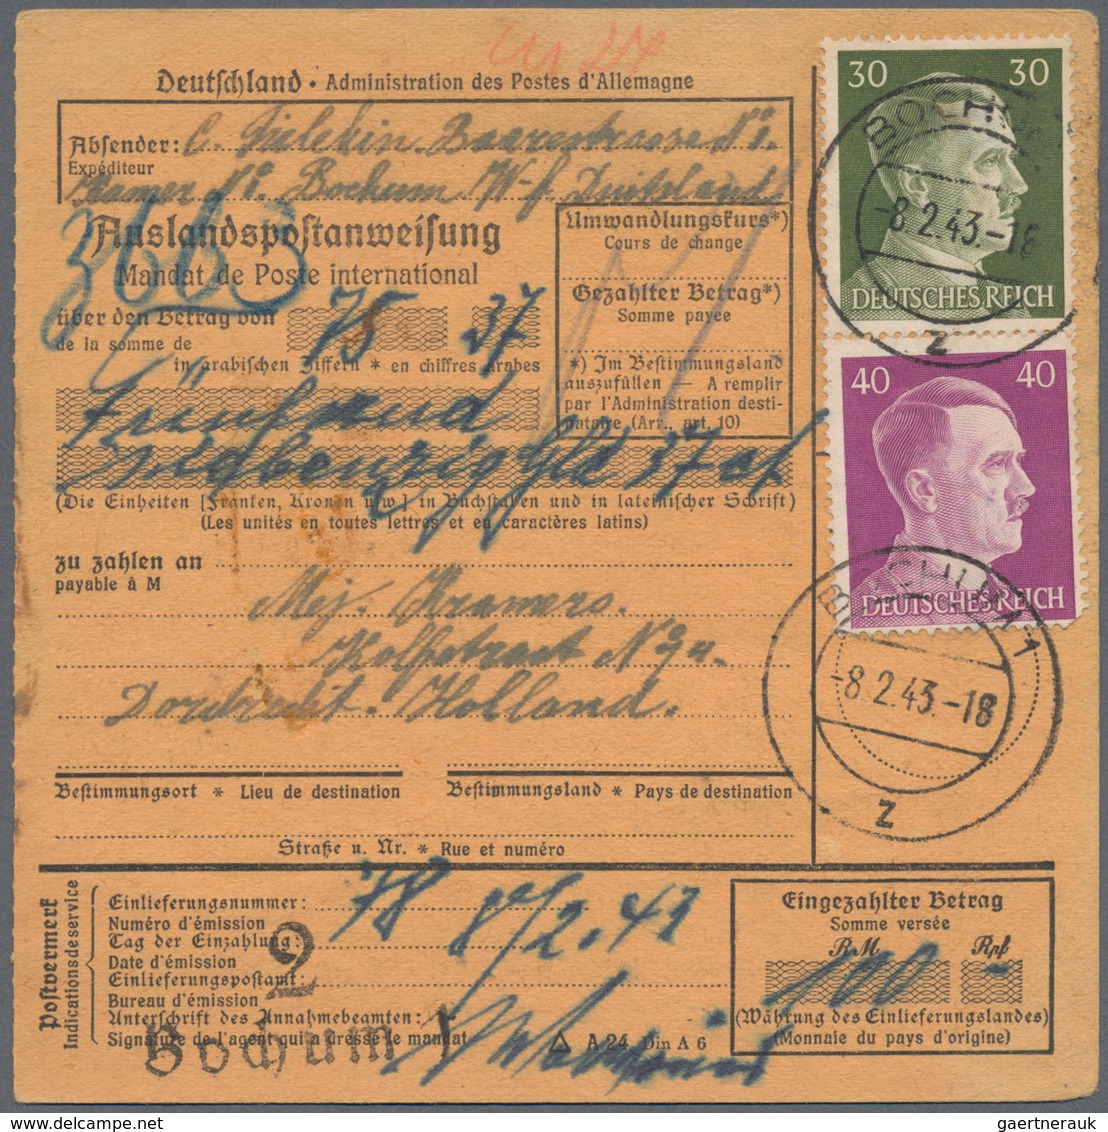 Deutschland: 1850/1955 ca., POSTANWEISUNGEN, gehaltvoller Sammlungsbestand mit ca.60 Belegen, dabei